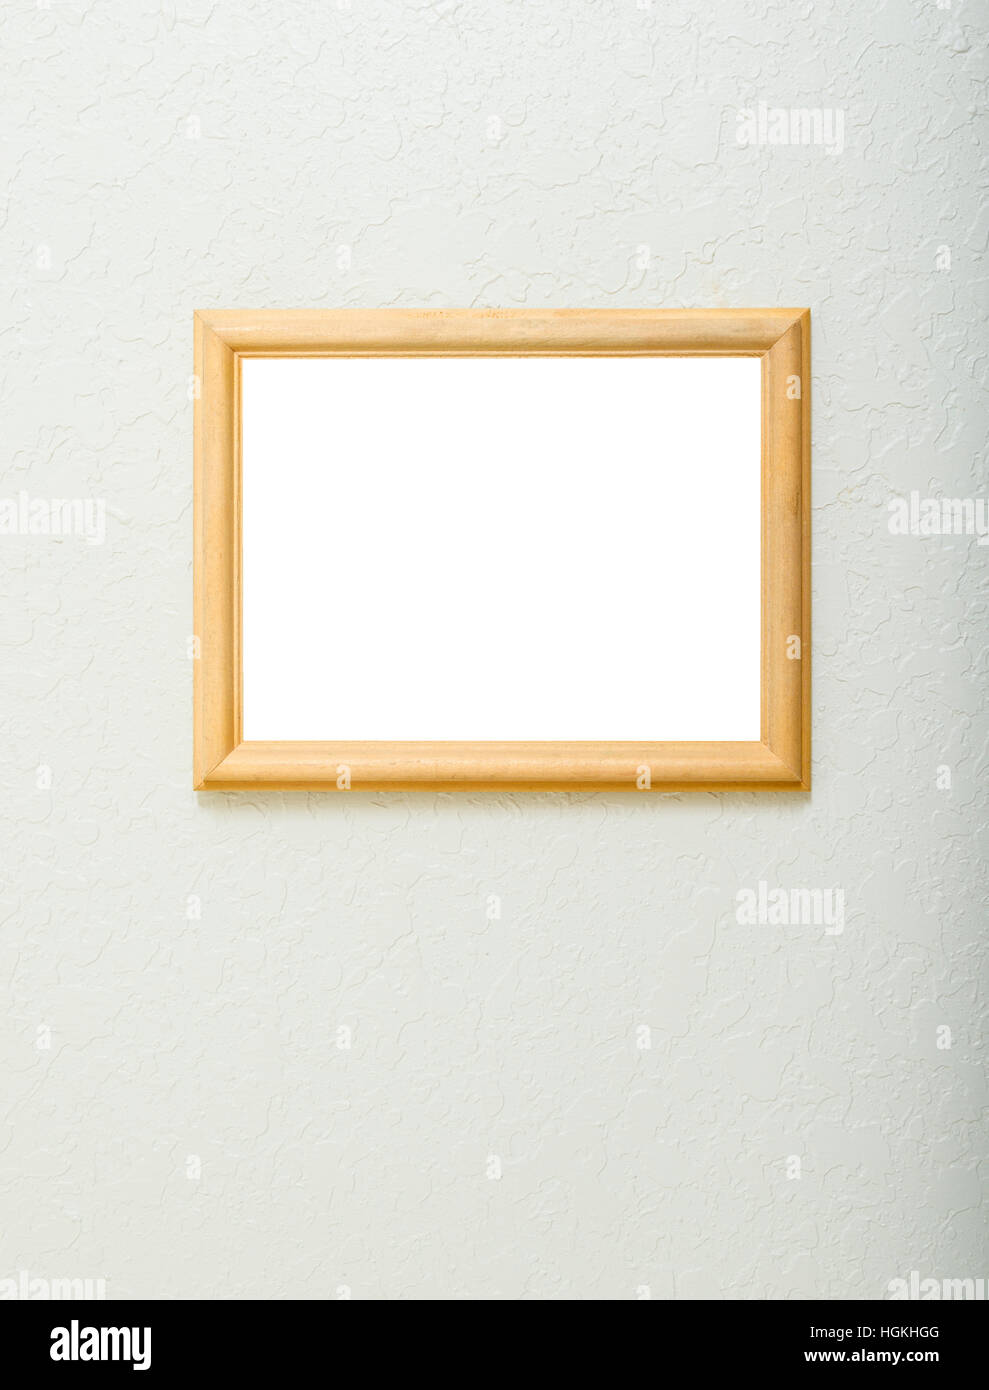 Un vuoto il telaio in legno su una texture di sfondo avorio. Camera per foto o altre opere d'arte in frame, con abbondanza di spazio di copia. Foto Stock